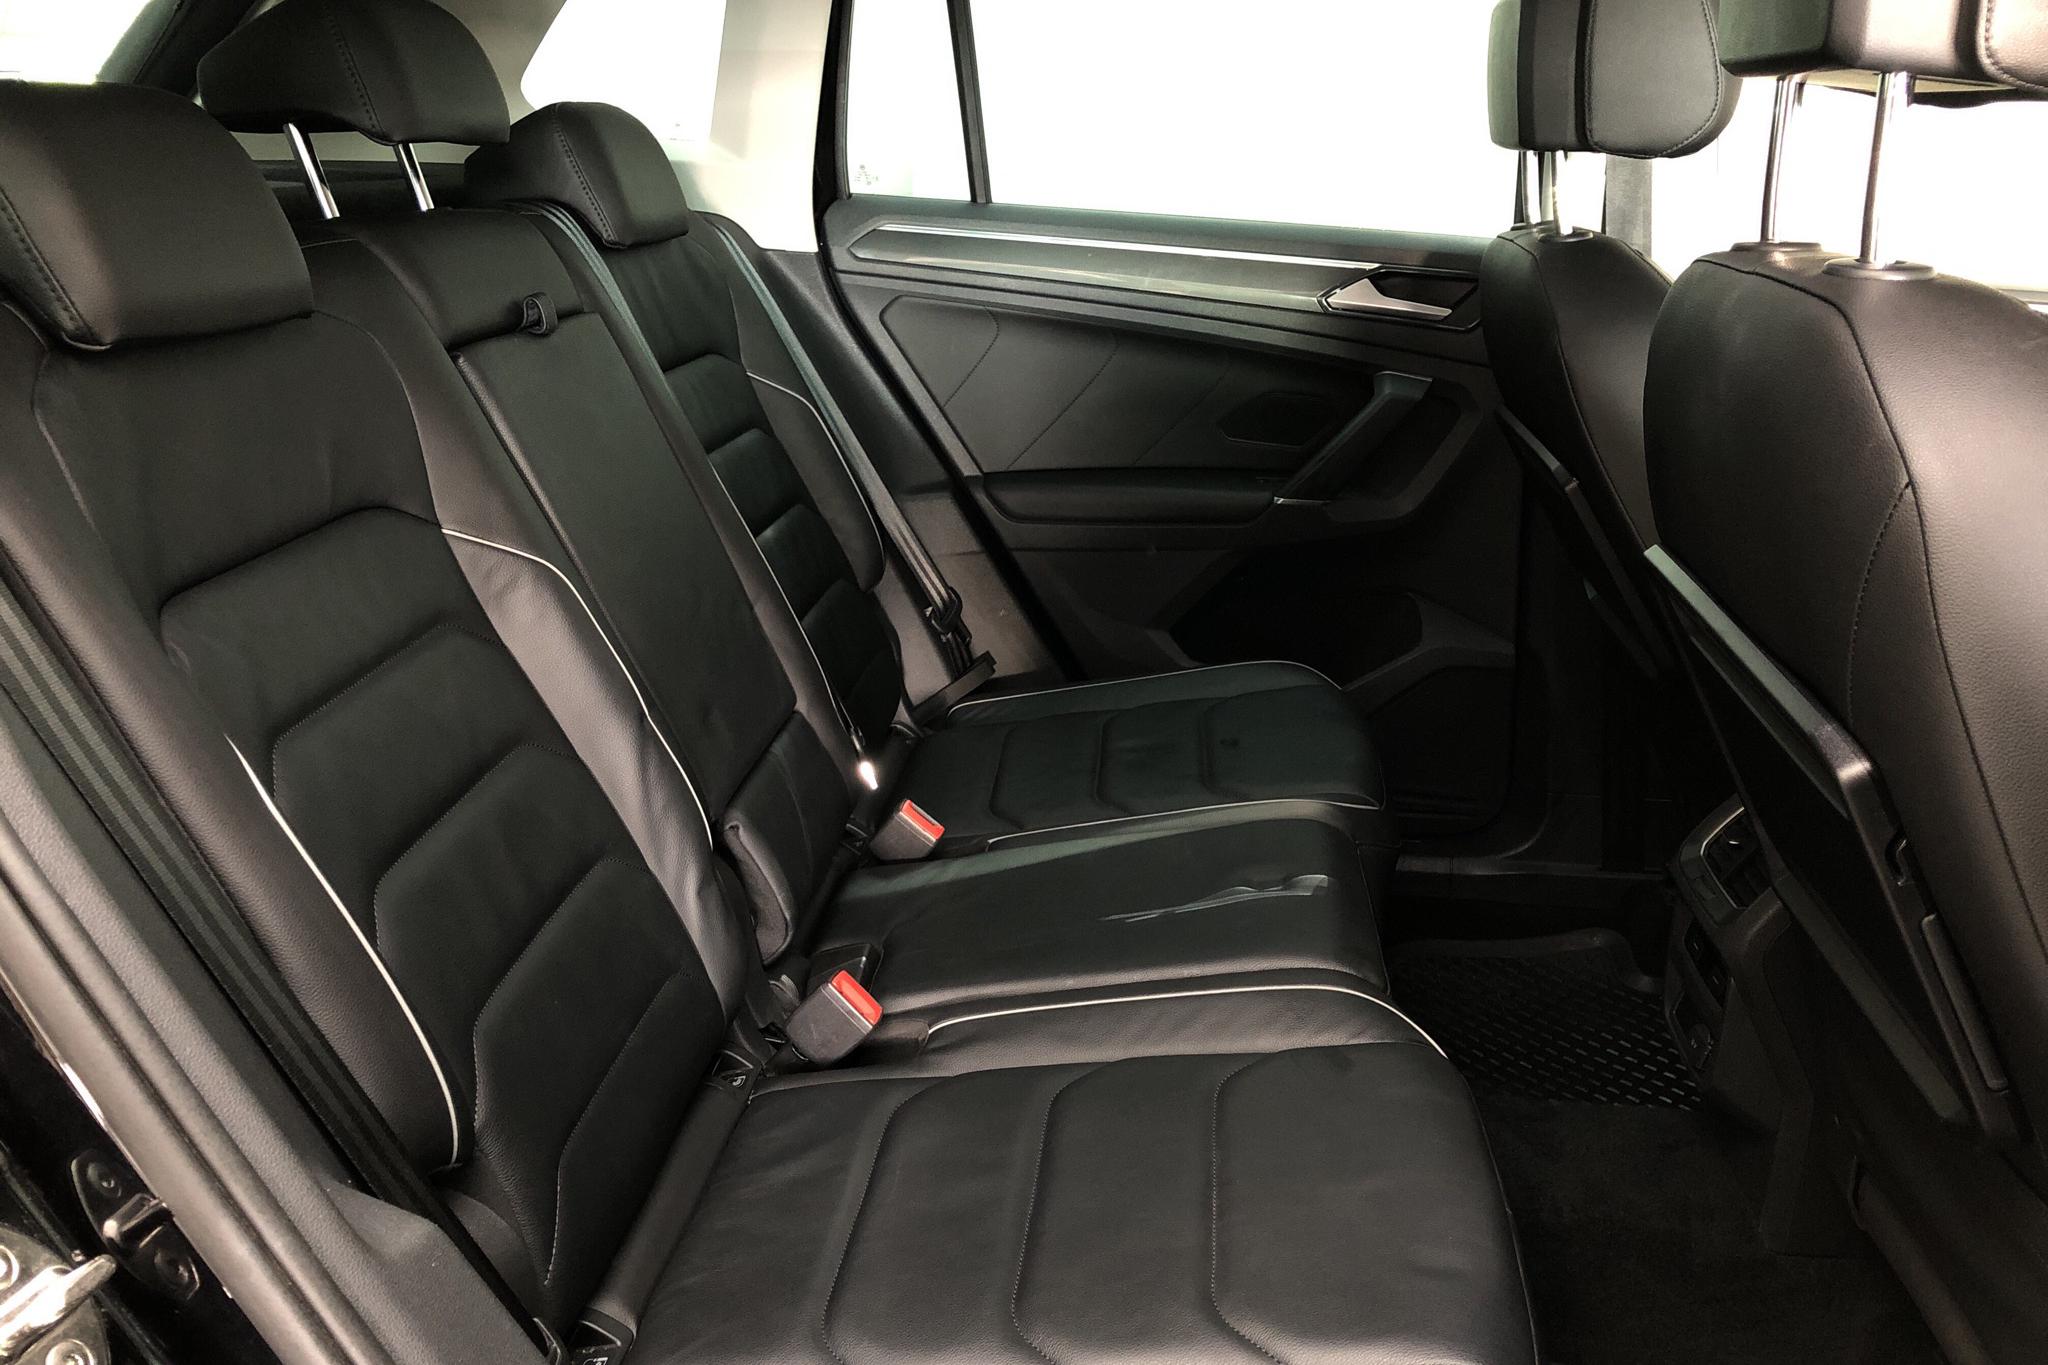 VW Tiguan 2.0 TDI 4MOTION (190hk) - 99 260 km - Automatic - black - 2017